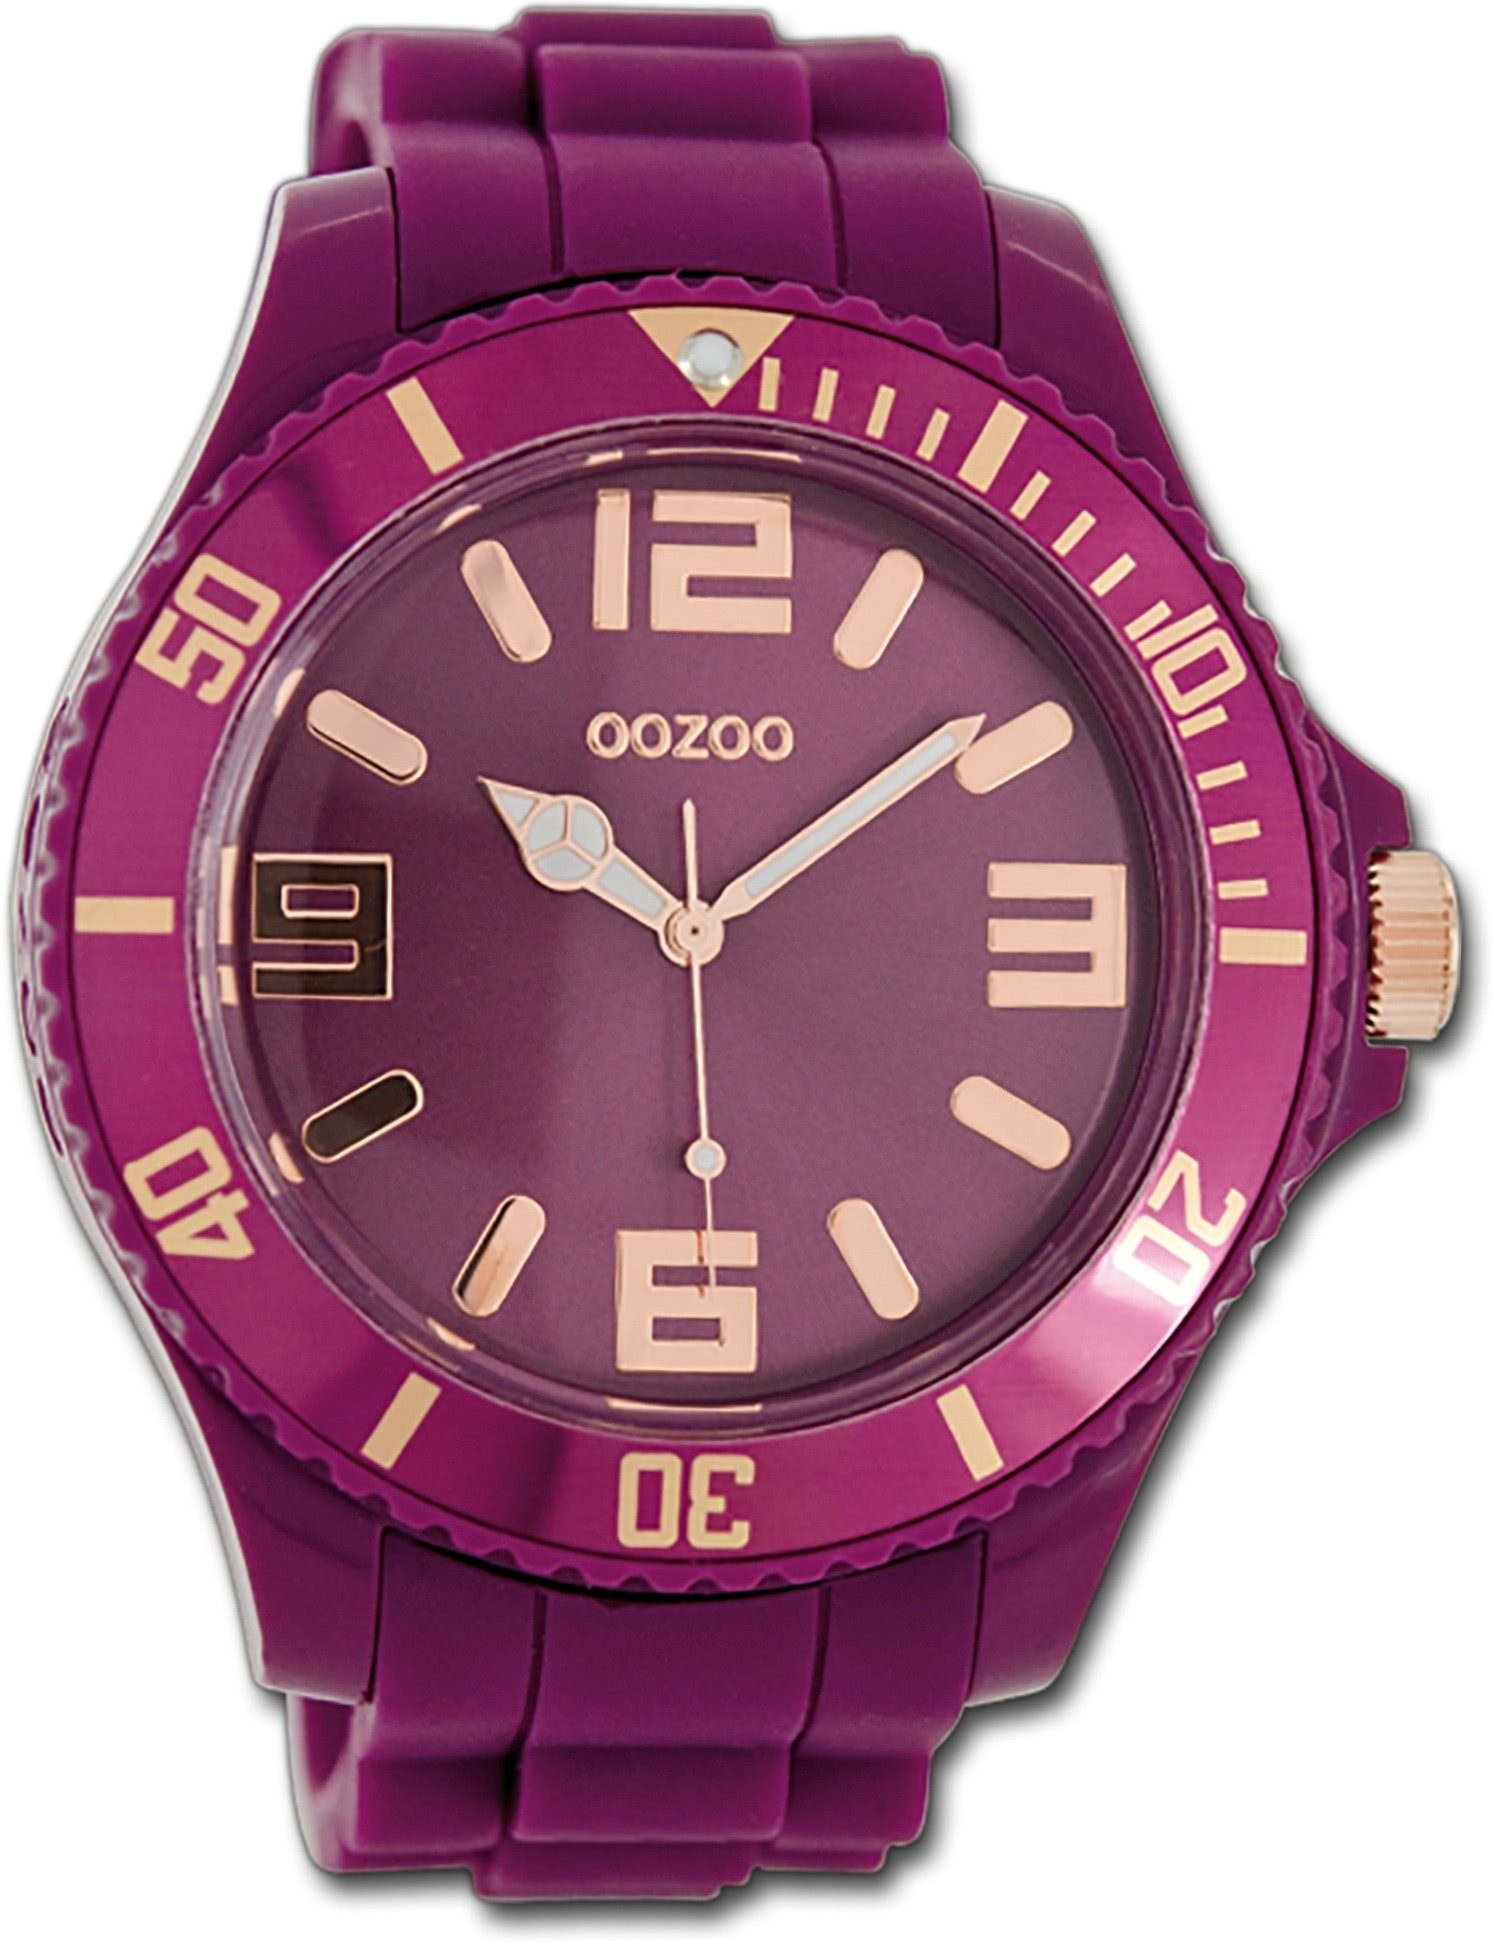 OOZOO Quarzuhr Oozoo Unisex Armbanduhr Vintage Series, (Analoguhr), Unisexuhr Silikonarmband aubergine, lila, rundes Gehäuse, groß (48mm)